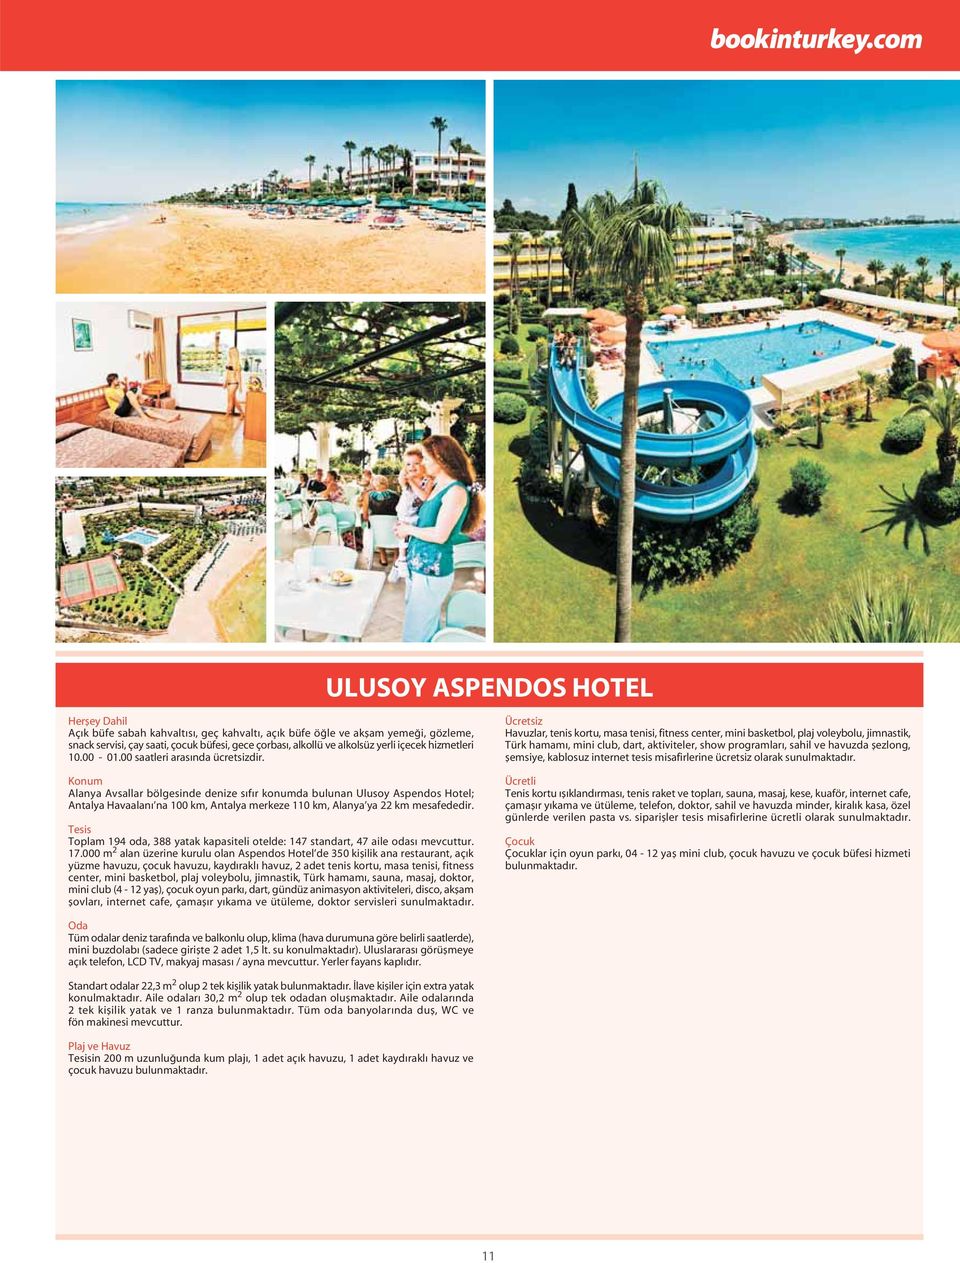 Alanya Avsallar bölgesinde denize s f r konumda bulunan Ulusoy Aspendos Hotel; Antalya Havaalanı na 100 km, Antalya merkeze 110 km, Alanya ya 22 km mesafededir.